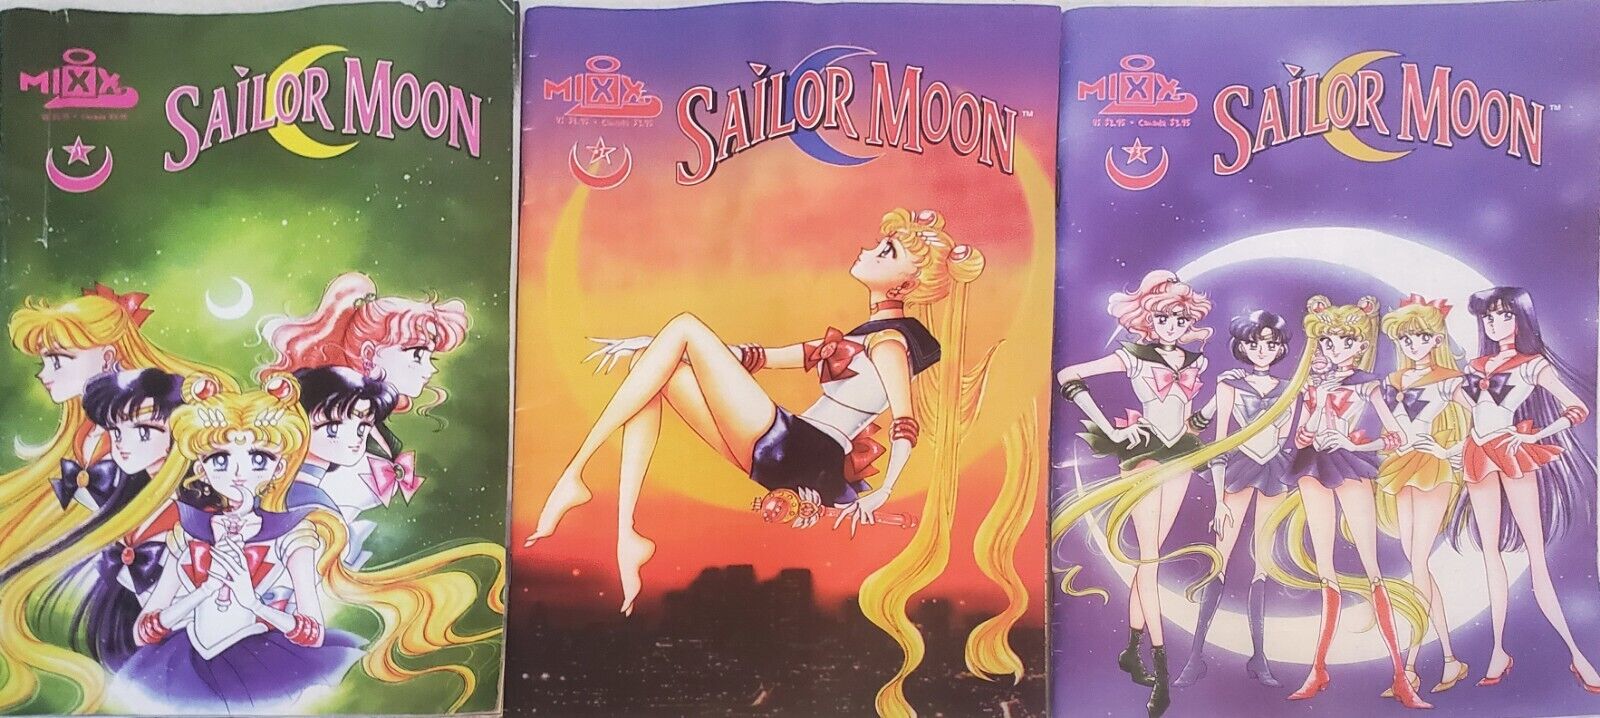 Sailor Moon #1 - #3     1 ST Print -     1 Issue    Mixx Chix Comics